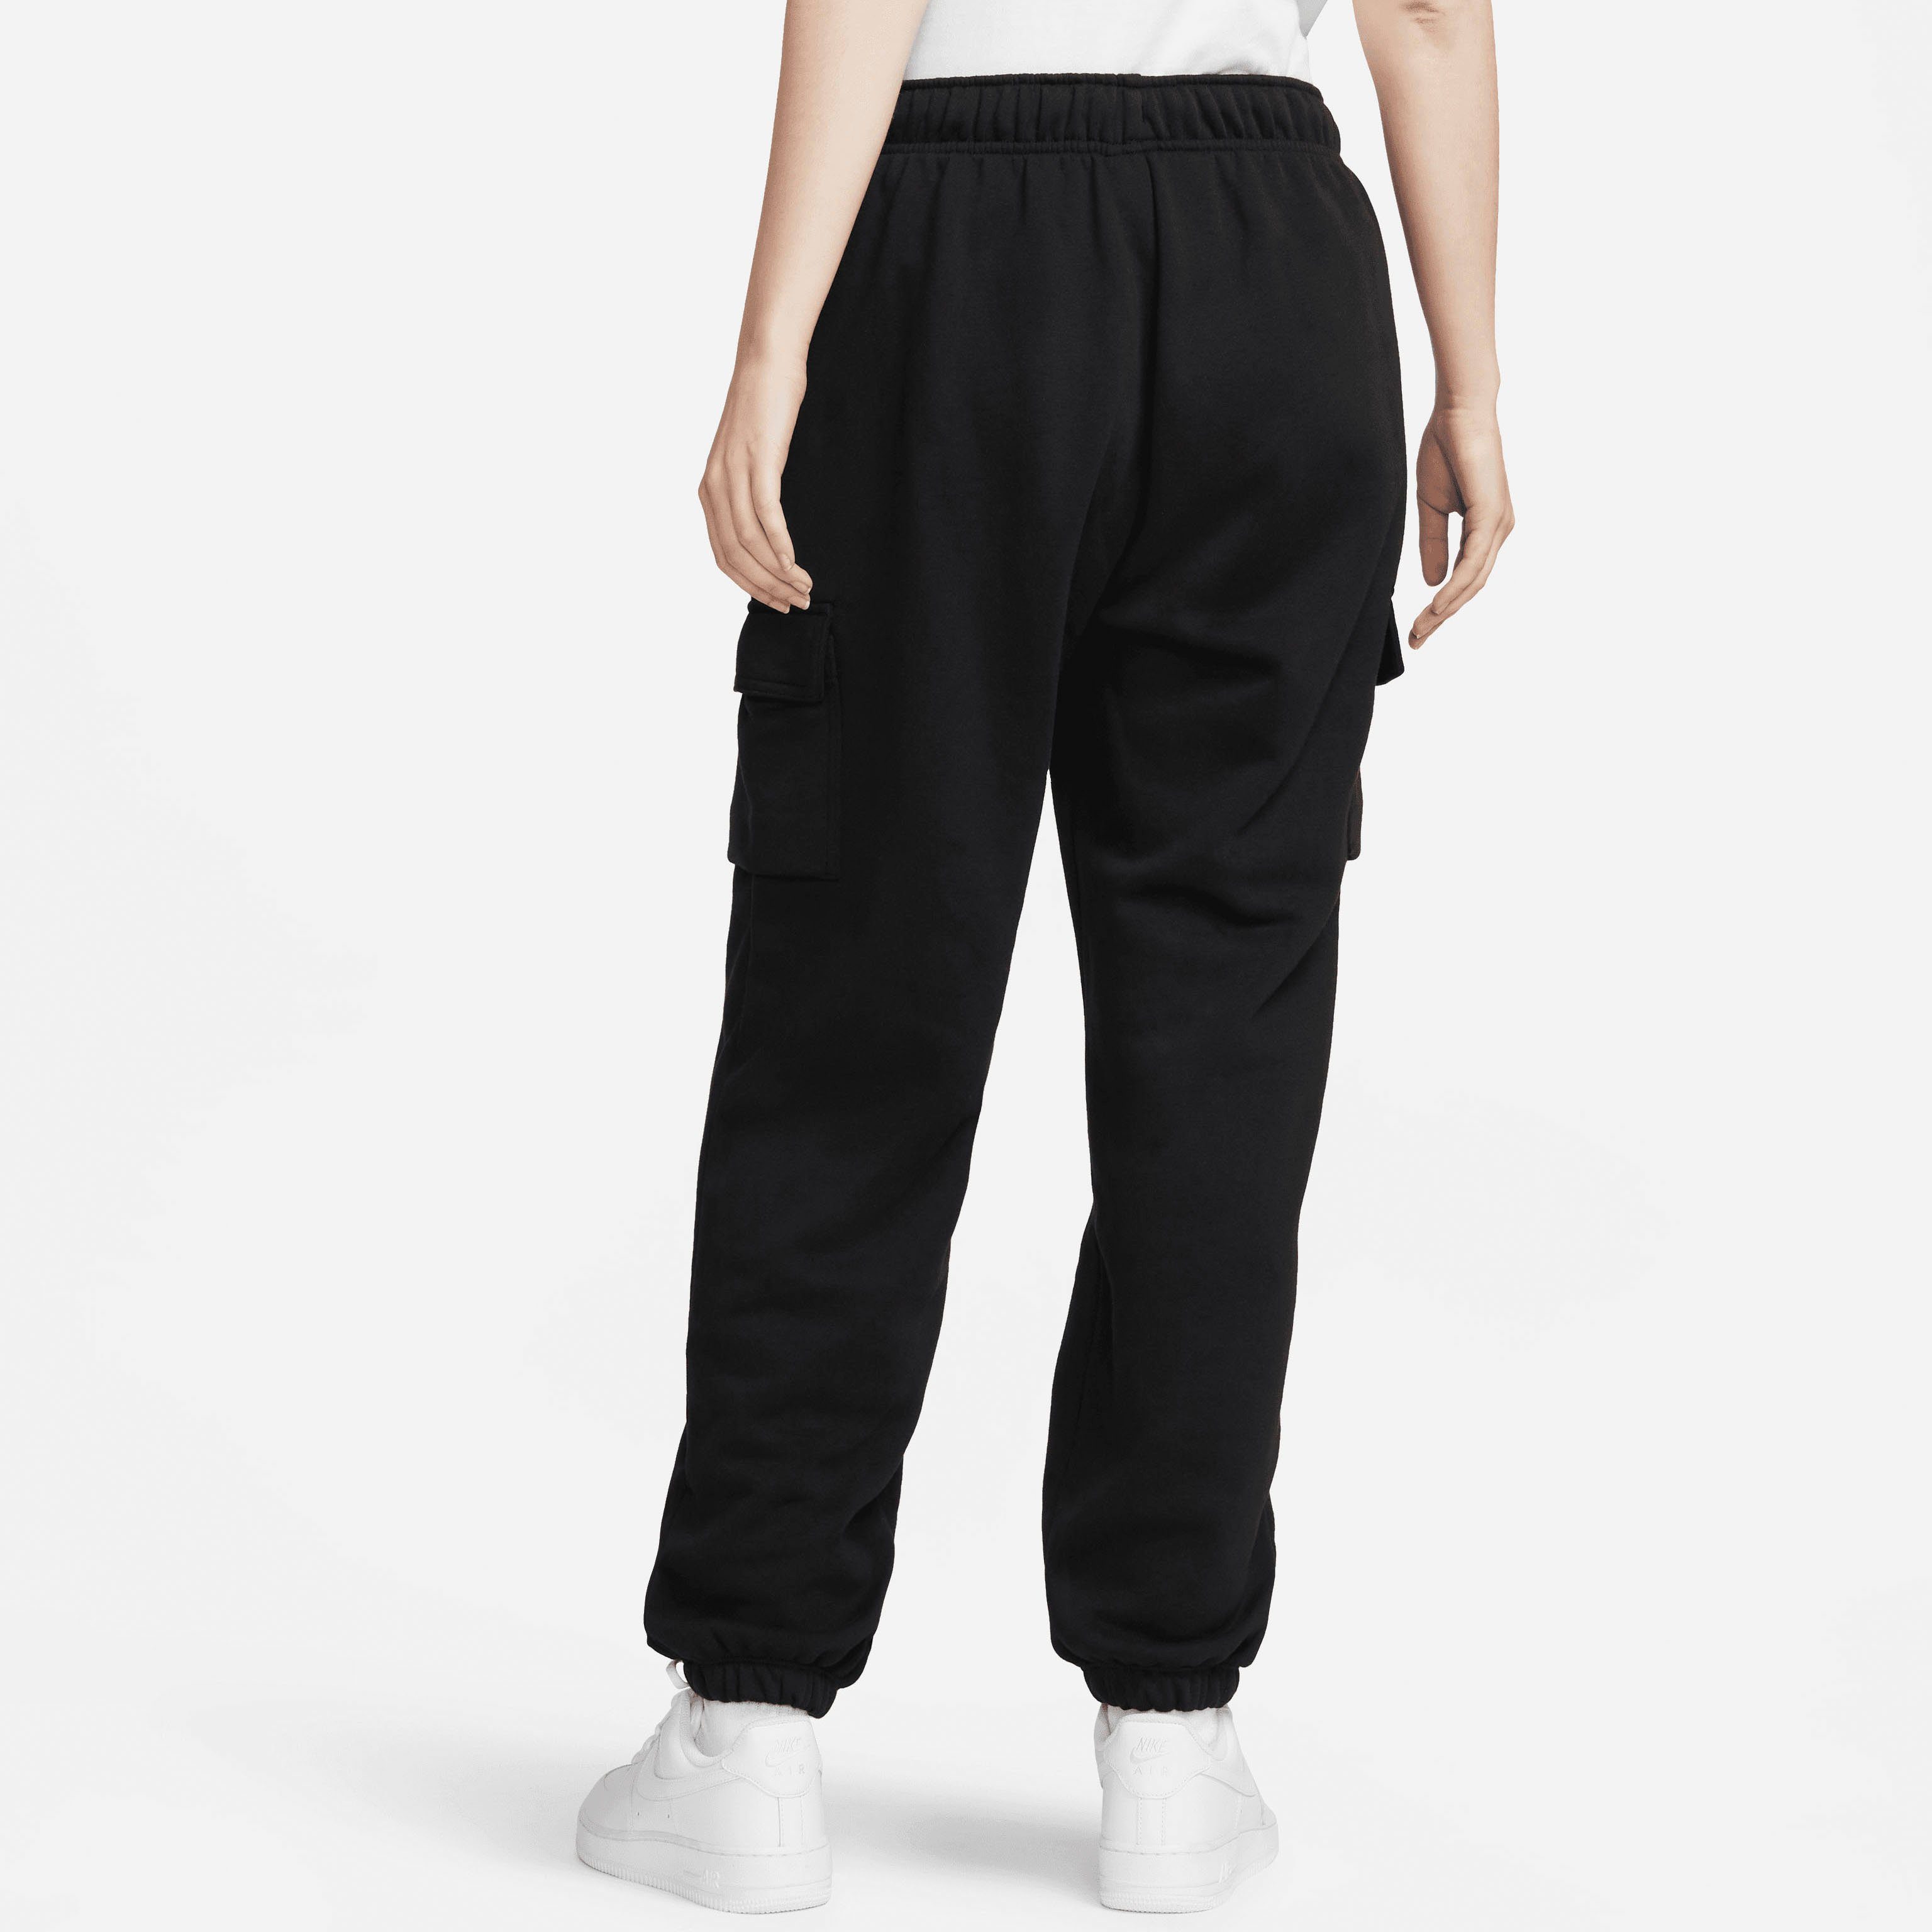 Cargo Nike Women's Fleece Sweatpants Club BLACK/WHITE Jogginghose Mid-Rise Sportswear Oversized